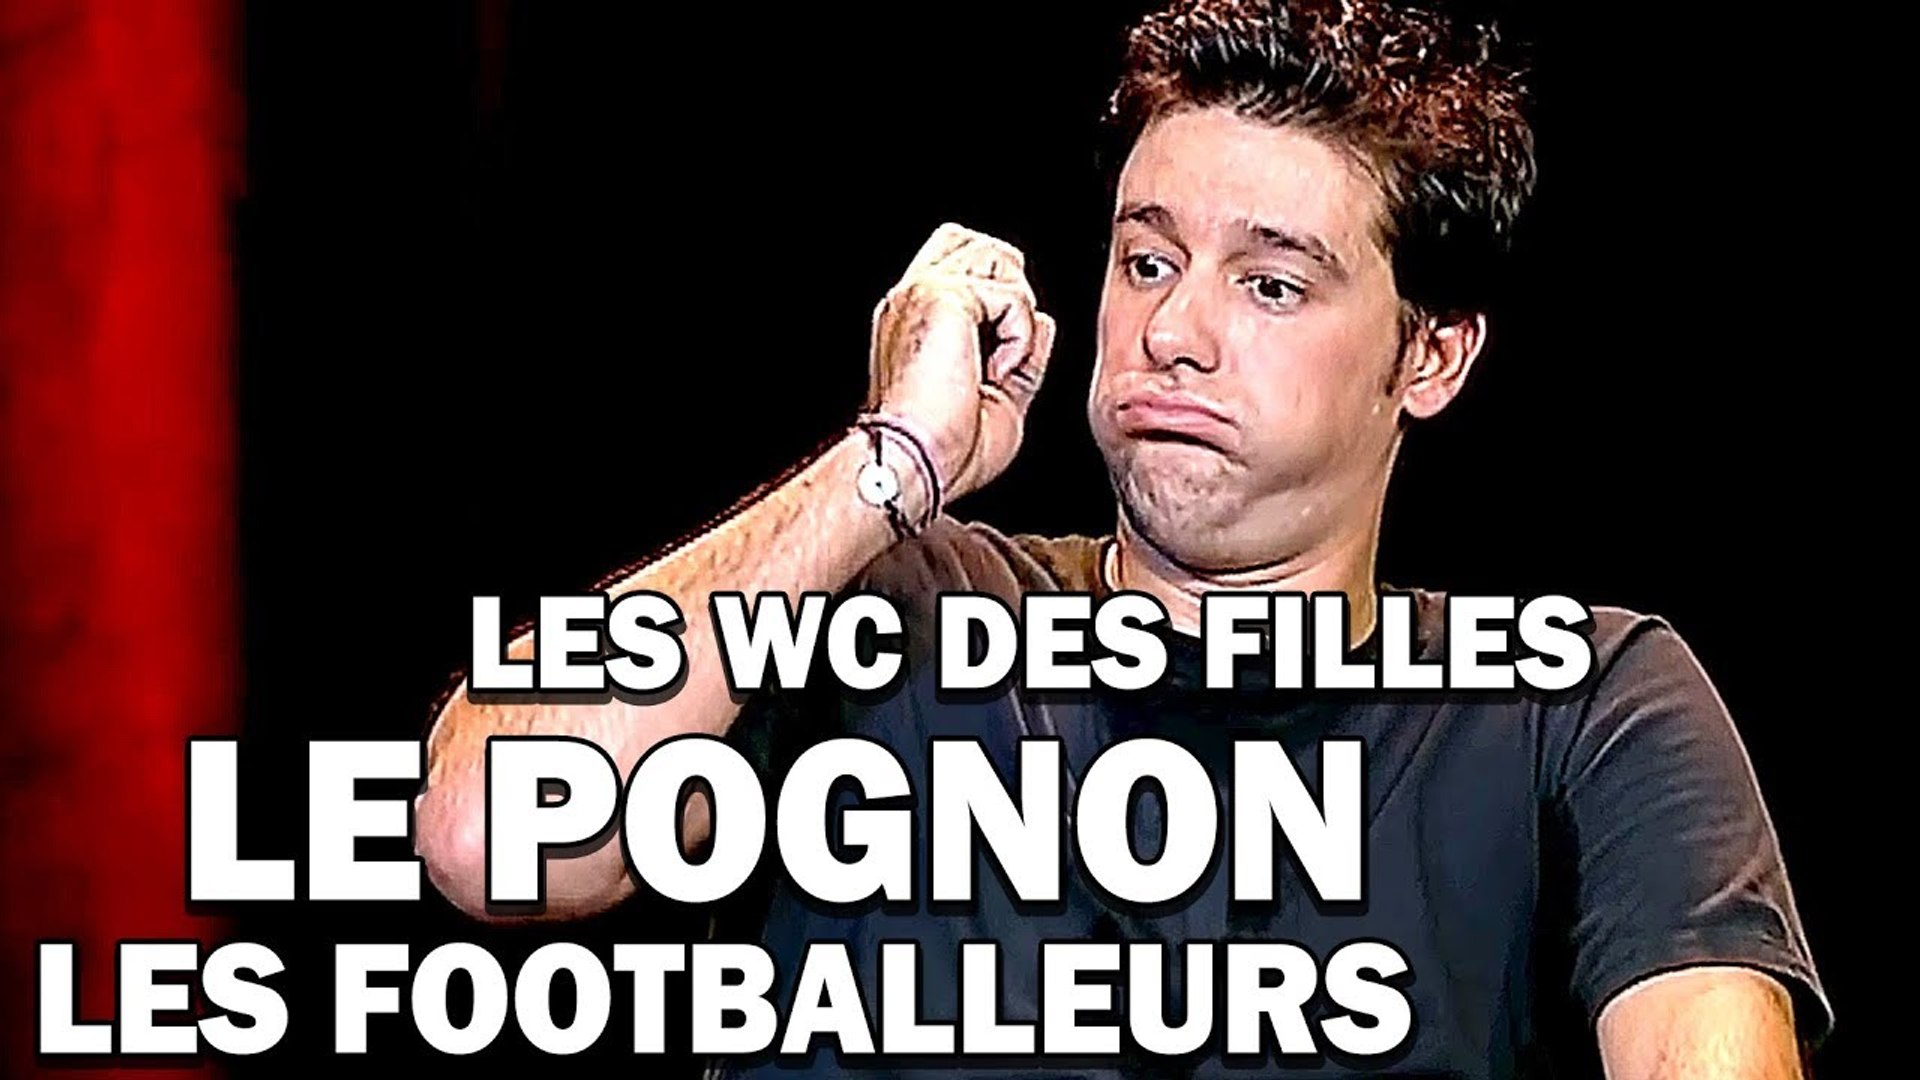 FR| Titoff  Spectacle COMPLET Le Pognon Les Toilettes pour Filles Le Footballeur